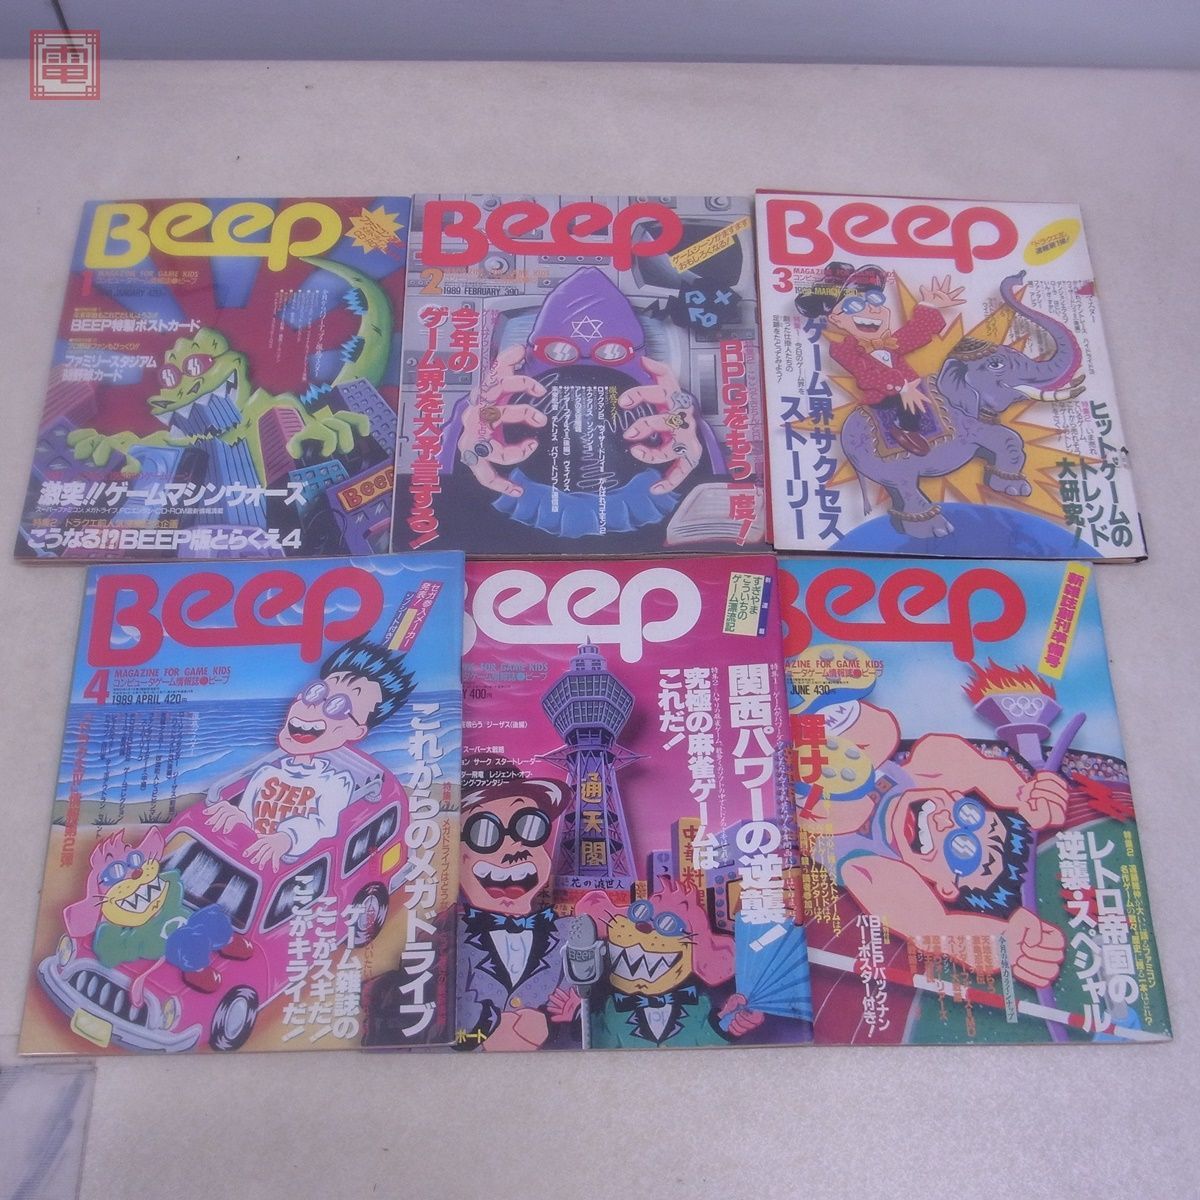  журнал компьютер игра информация журнал ежемесячный Beep 1989 год 1 месяц номер ~6 месяц последний номер через год .. открытка есть совместно 6 шт. комплект Be p Япония SoftBank [20